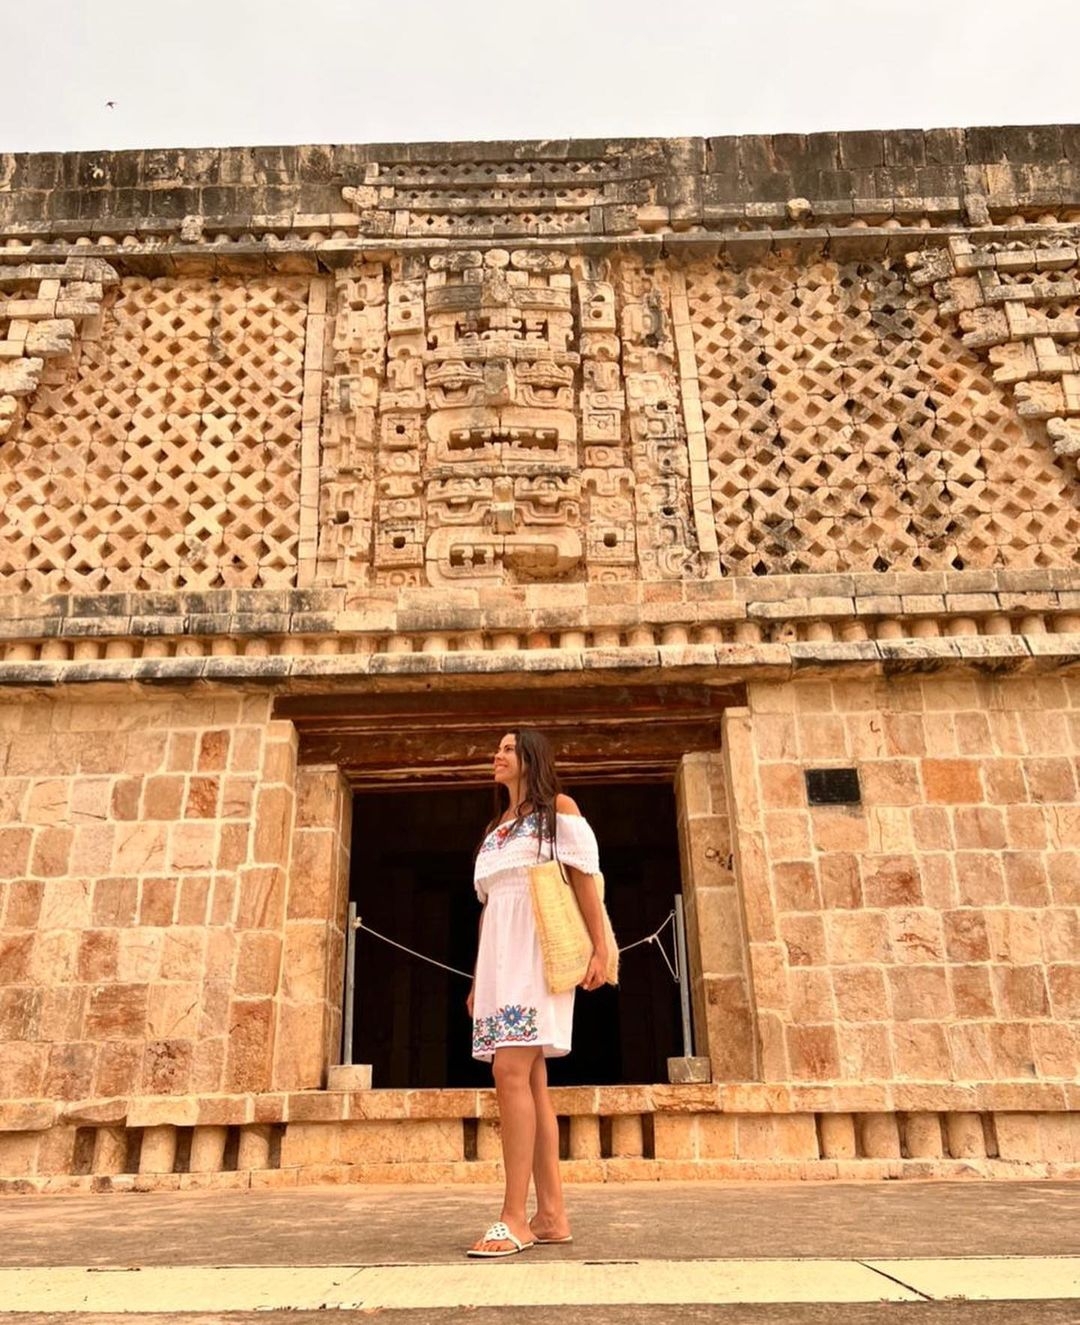 Paola Rojas queda maravillada en su visita en la zona arqueológica de Uxmal en Yucatán